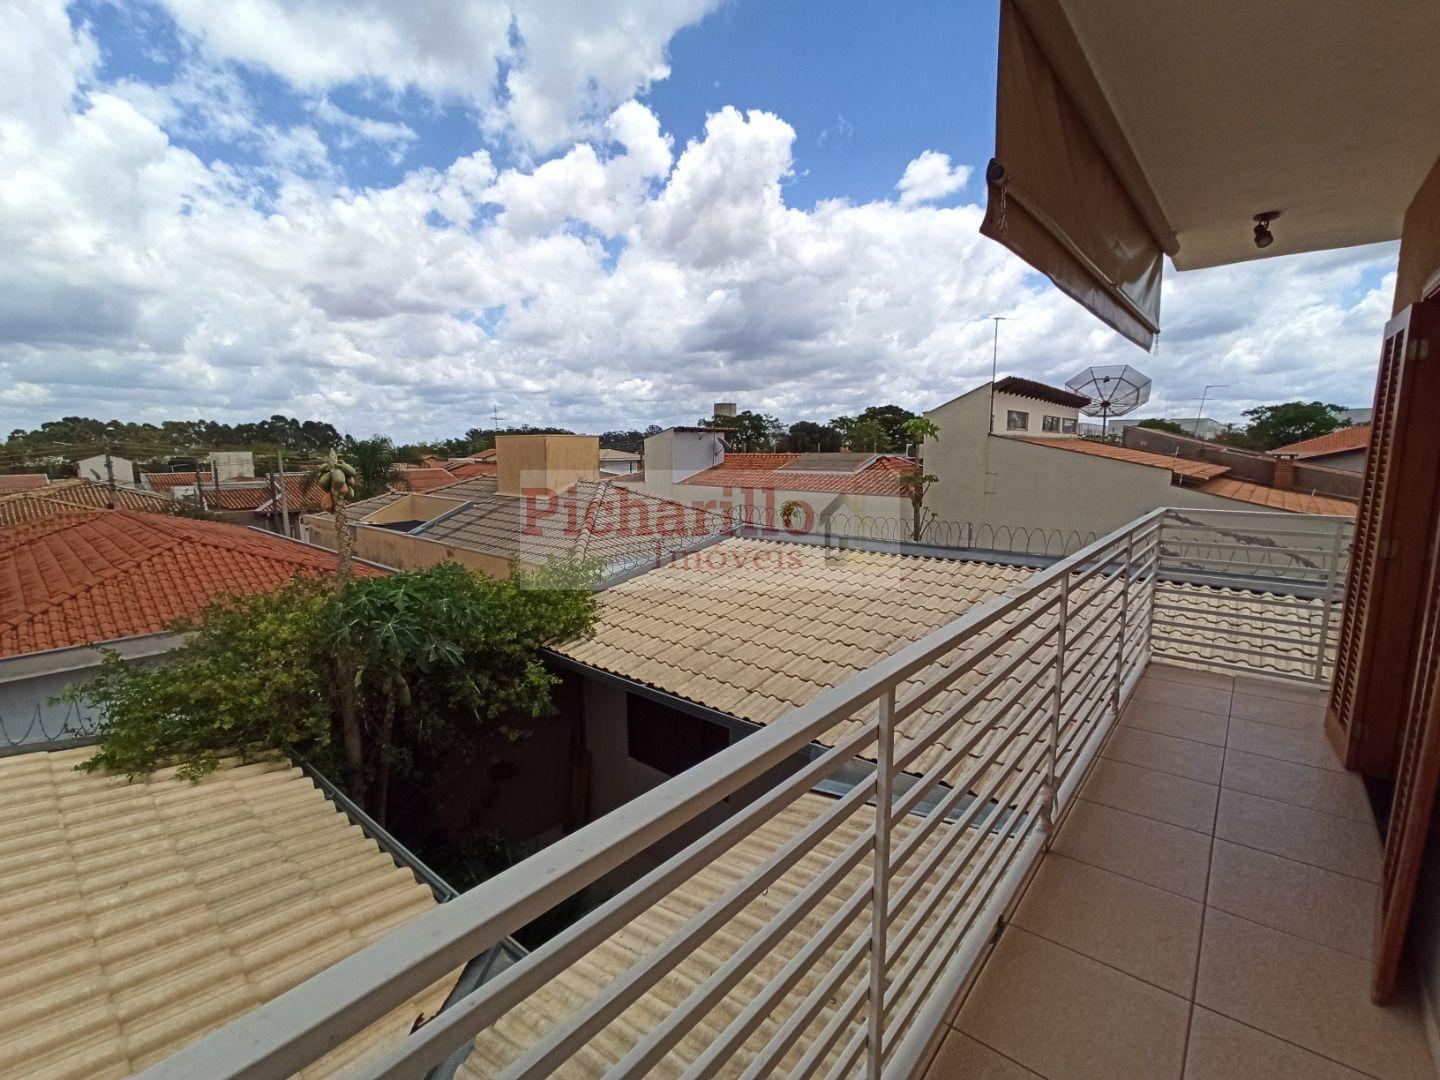 Casa com 4 dormitórios à venda, área constr. 258 m² Sobrado com varanda no Parque Fehr - São Carlos/SP